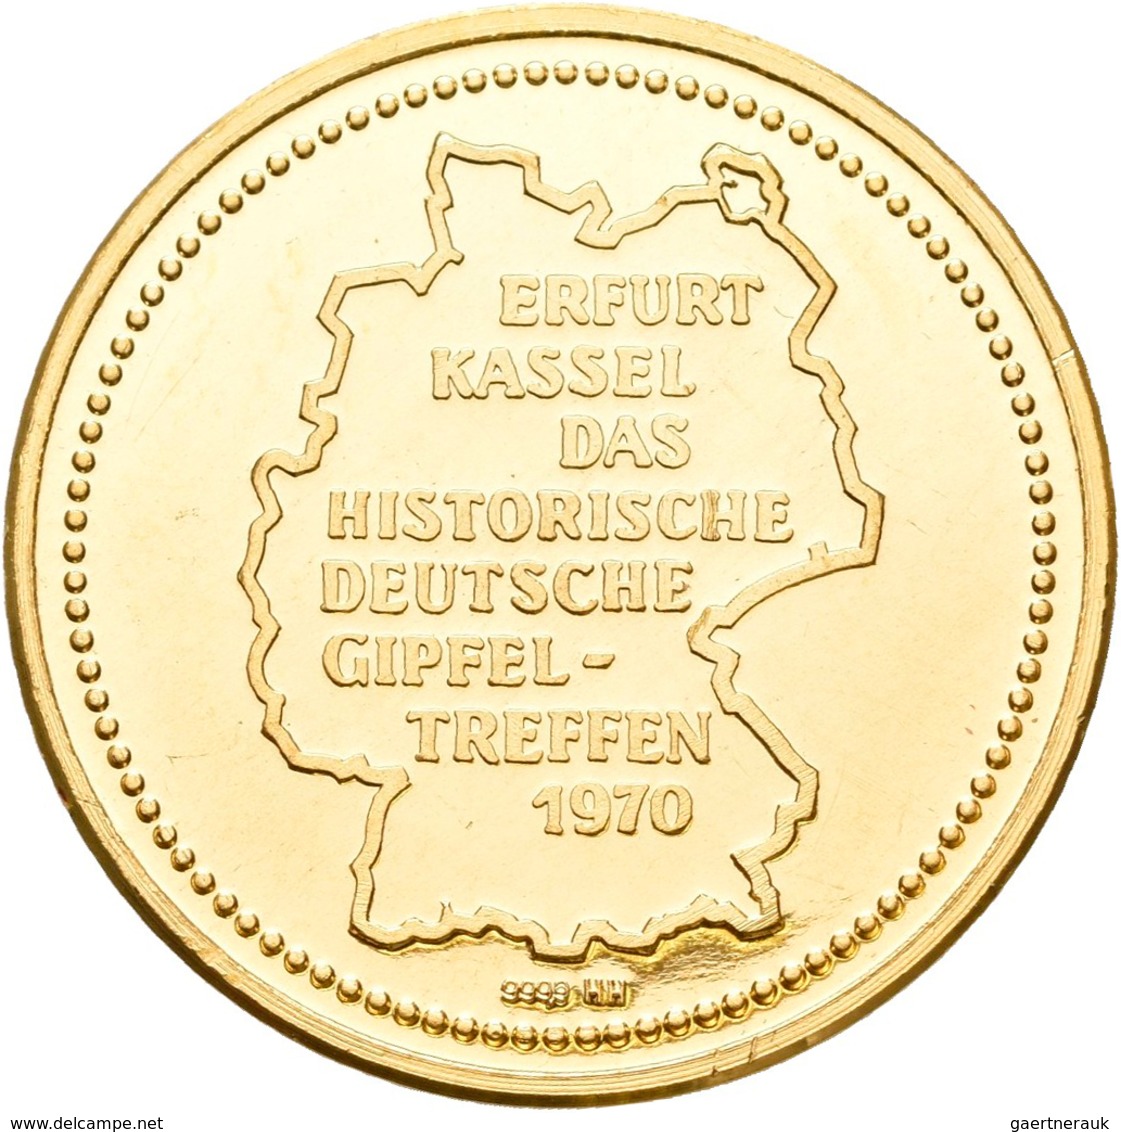 Medaillen Deutschland: BRD: Lot 6 Goldmedaillen; 2 x Konrad Adenauer 1957, Gold 900/1000, 22,5 mm, j